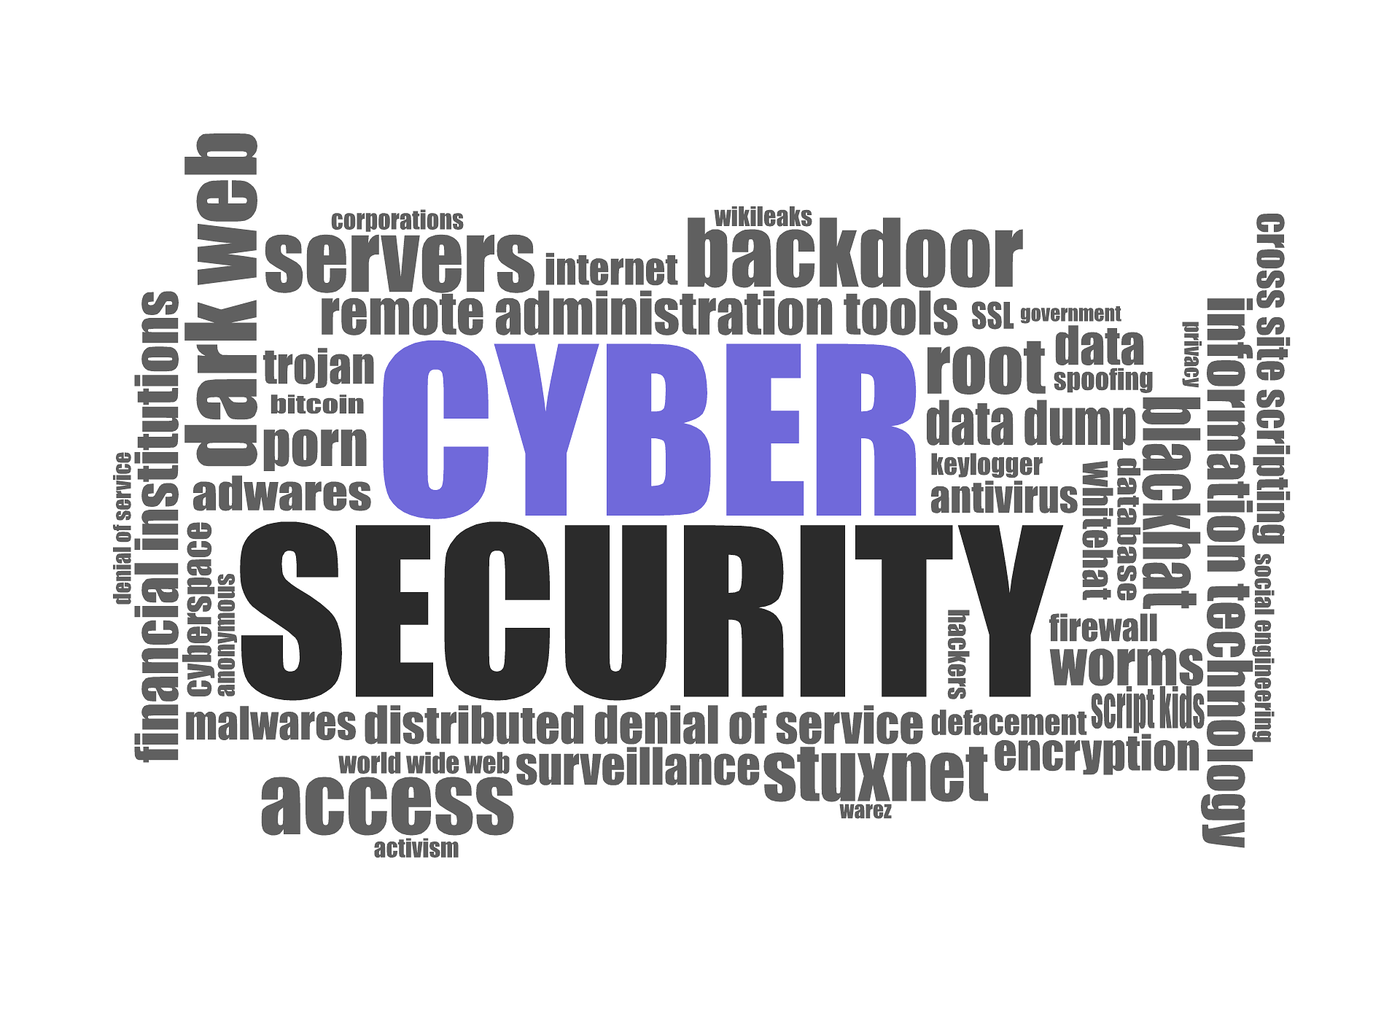 Das Bild zeigt eine Wortwolke mit englischen Begriffen zum Thema cybersecurity